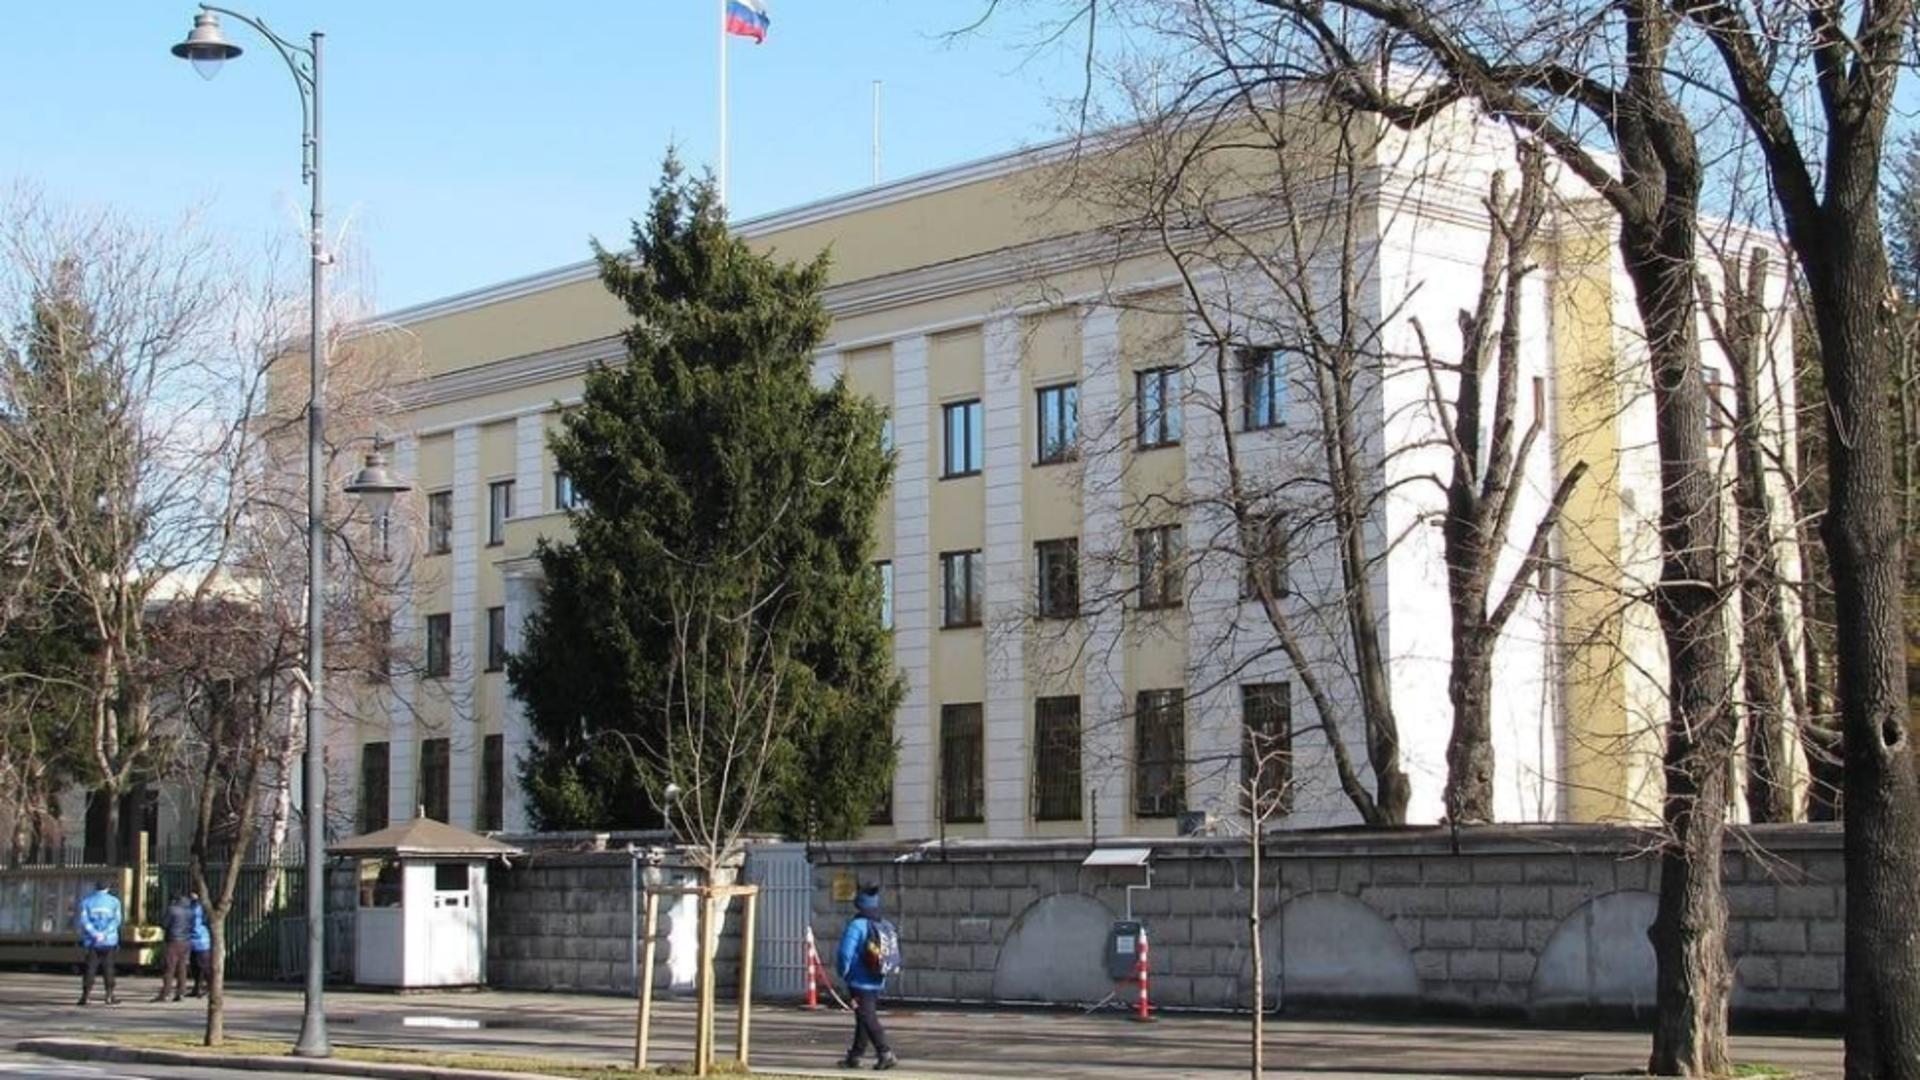 Alertă la Ambasada Rusiei din București. Pirotehniștii au intervenit de urgență